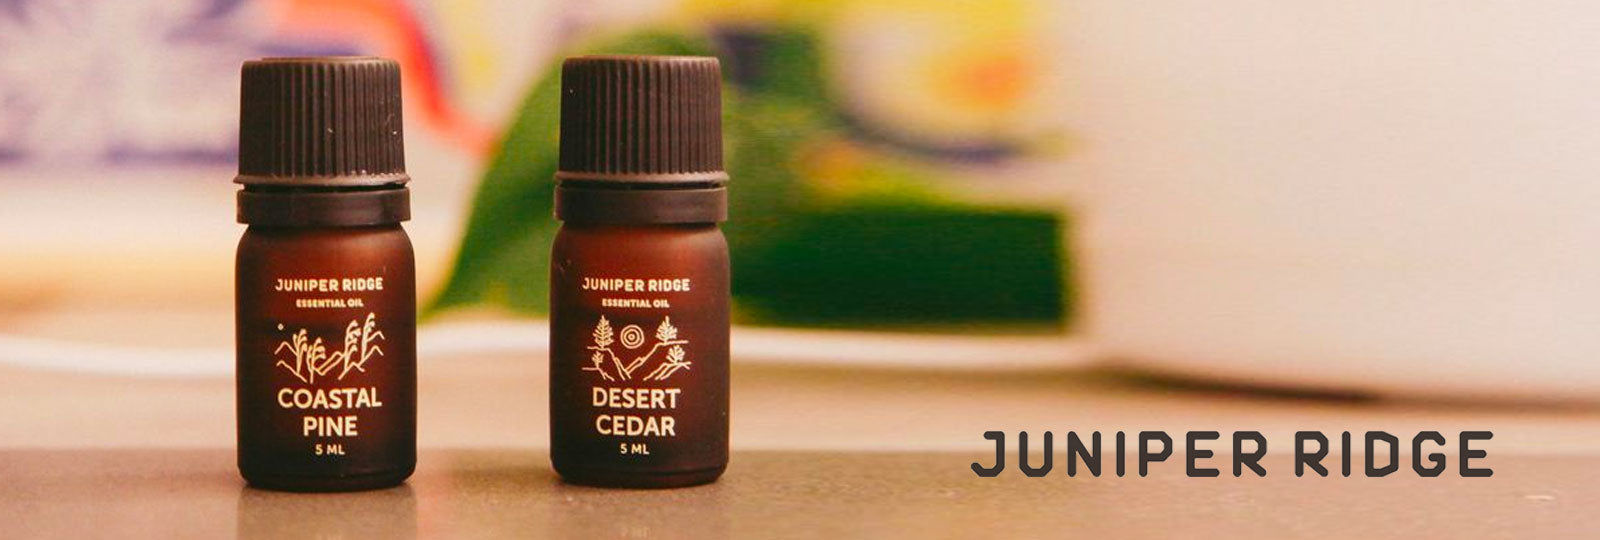 Juniper Ridge 5 ct Essential Oil Gift Pack